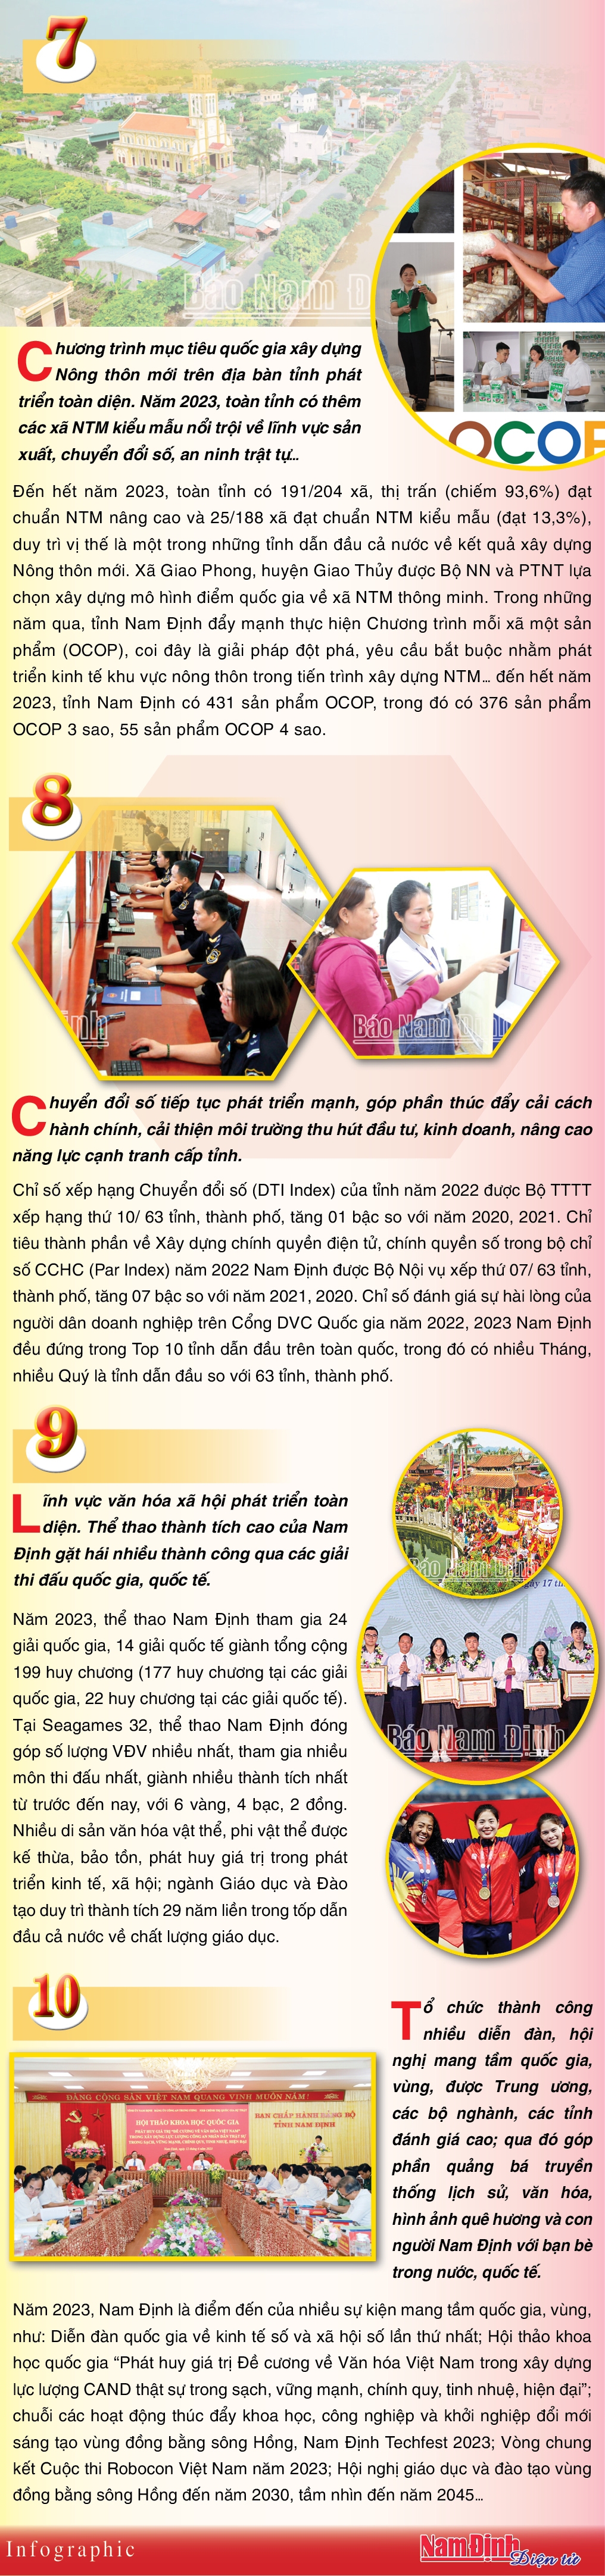 10 sự kiện tiêu biểu tỉnh Nam Định năm 2023 qua báo chí